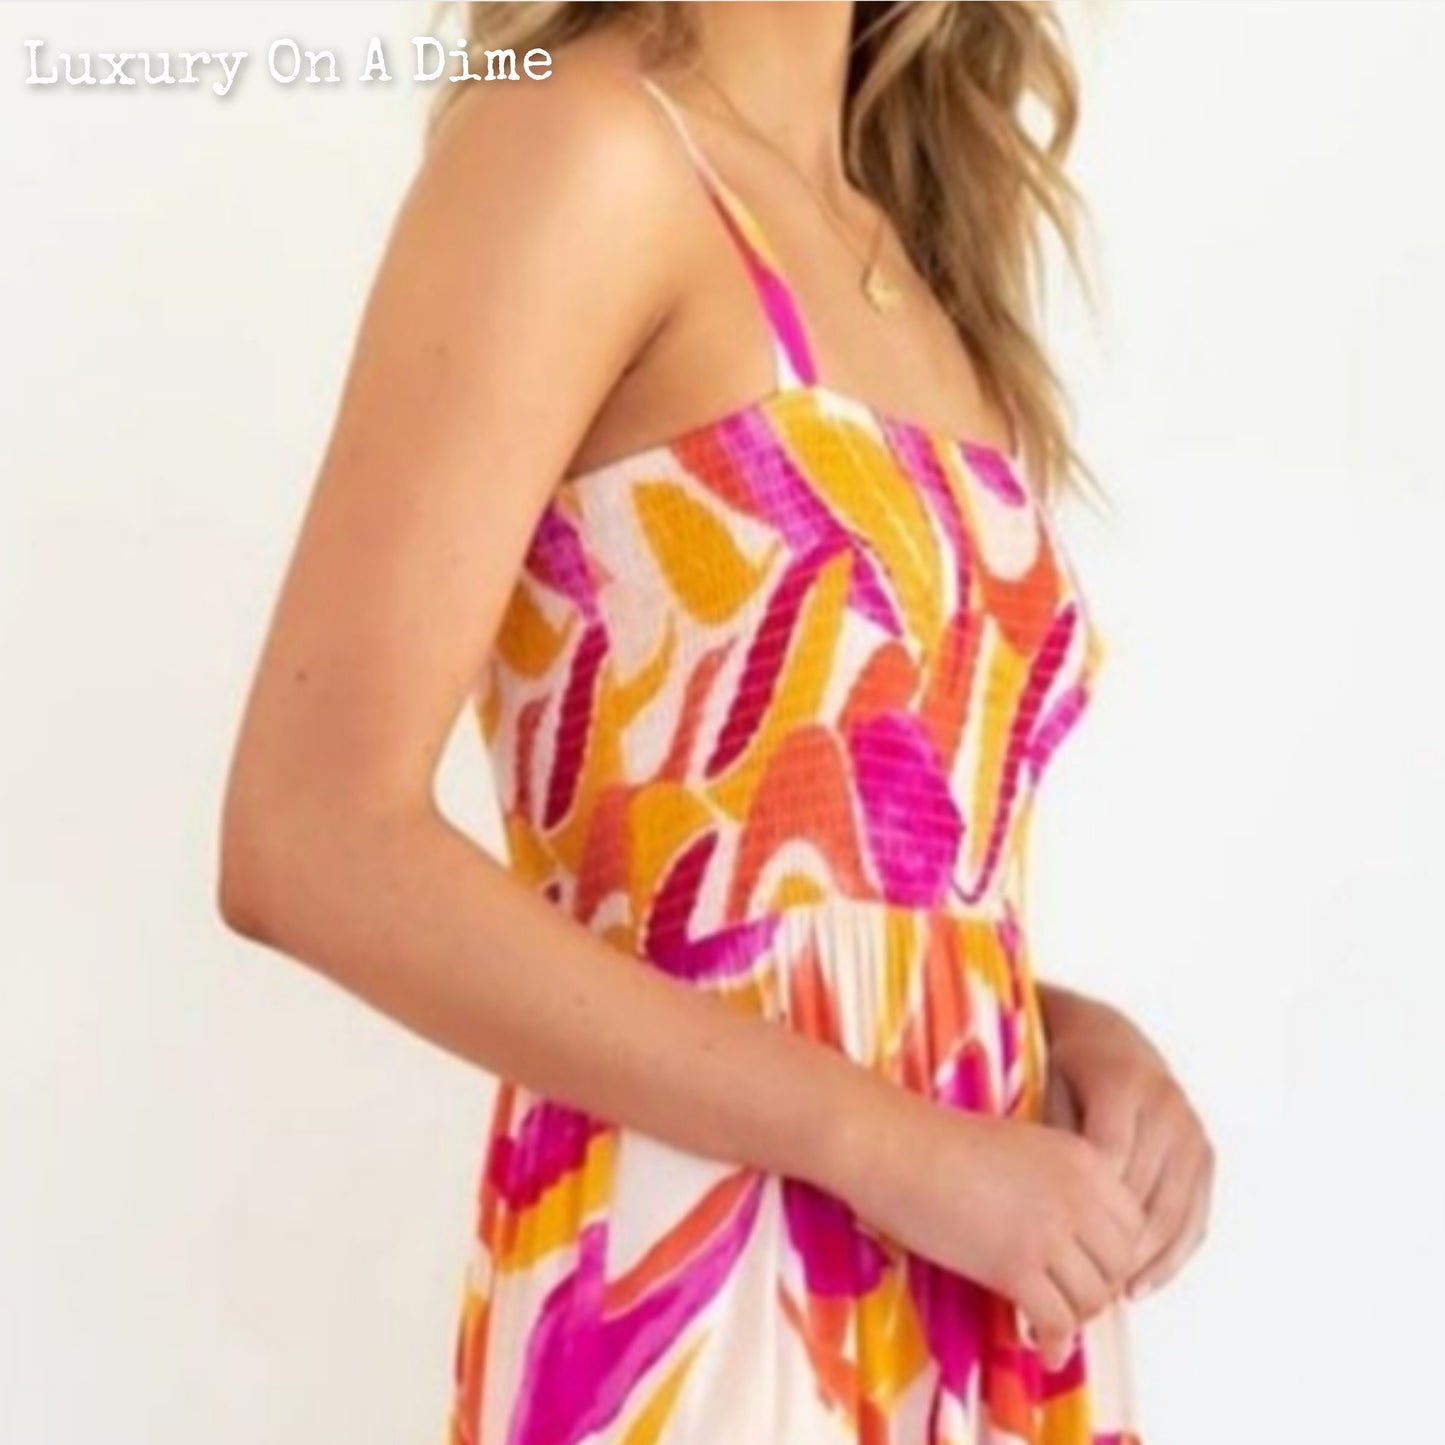 Bright Vibrant Abstract Sleeveless Smocked Bodice Summer Maxi Dress